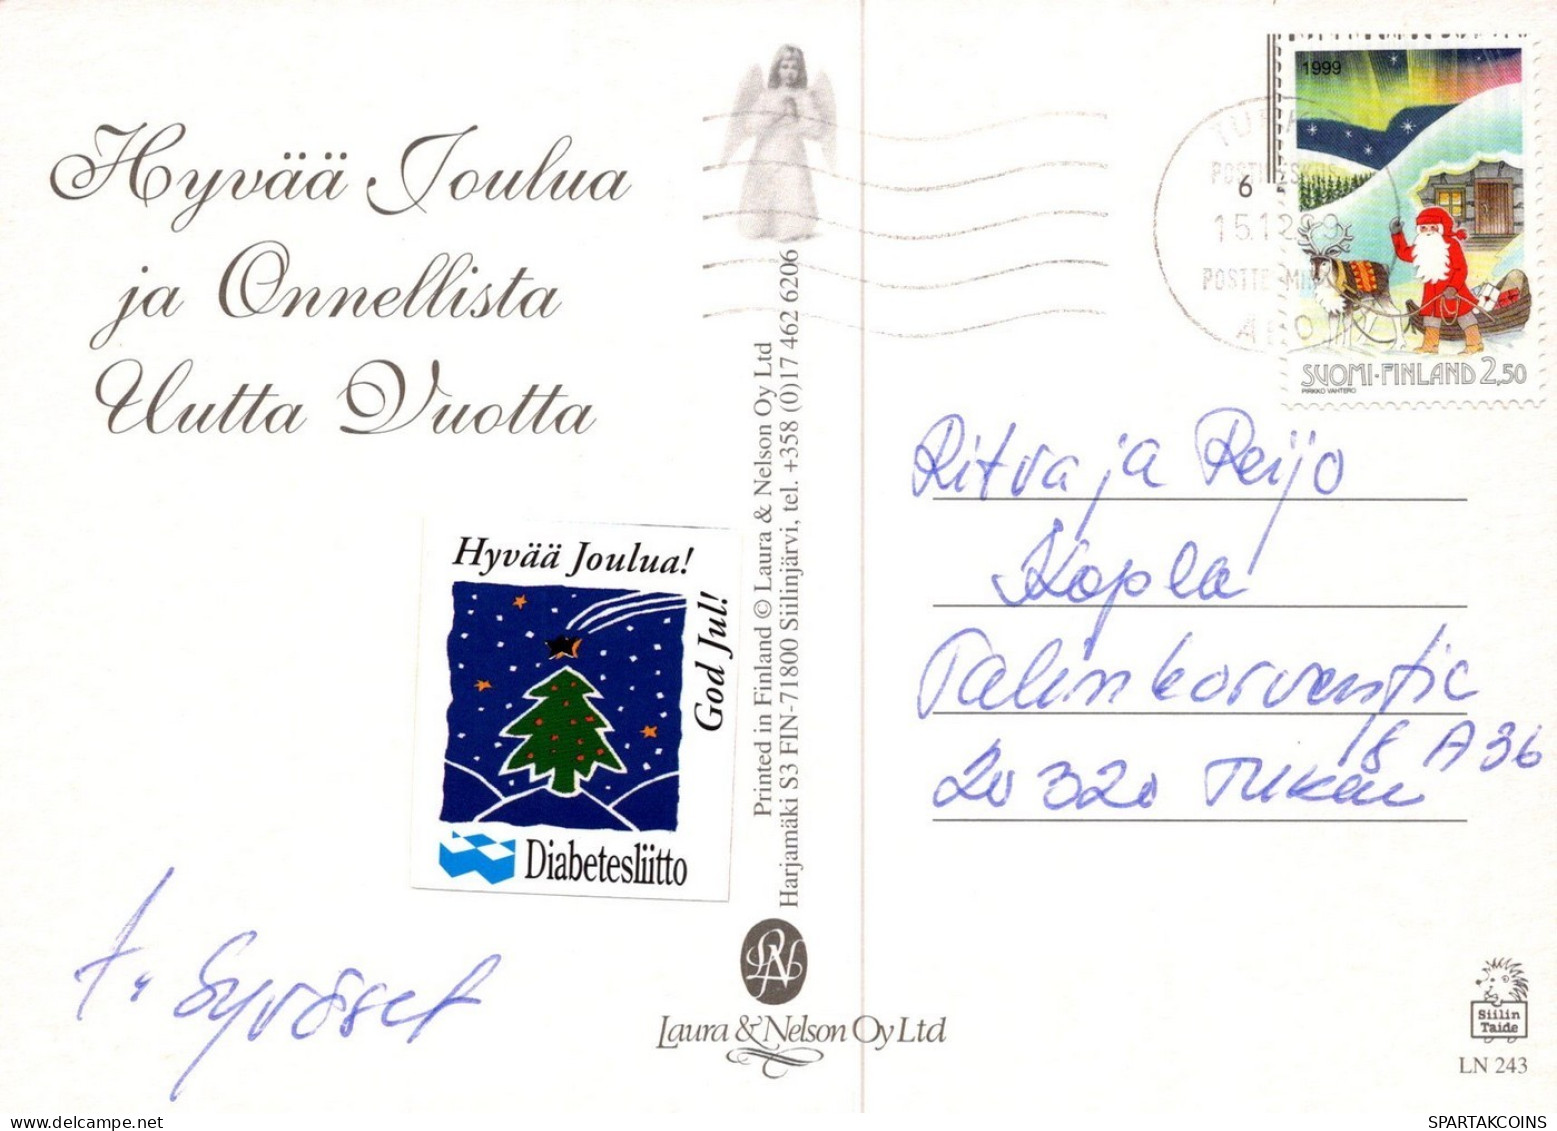 WEIHNACHTSMANN SANTA CLAUS KINDER WEIHNACHTSFERIEN Vintage Postkarte CPSM #PAK380.DE - Santa Claus